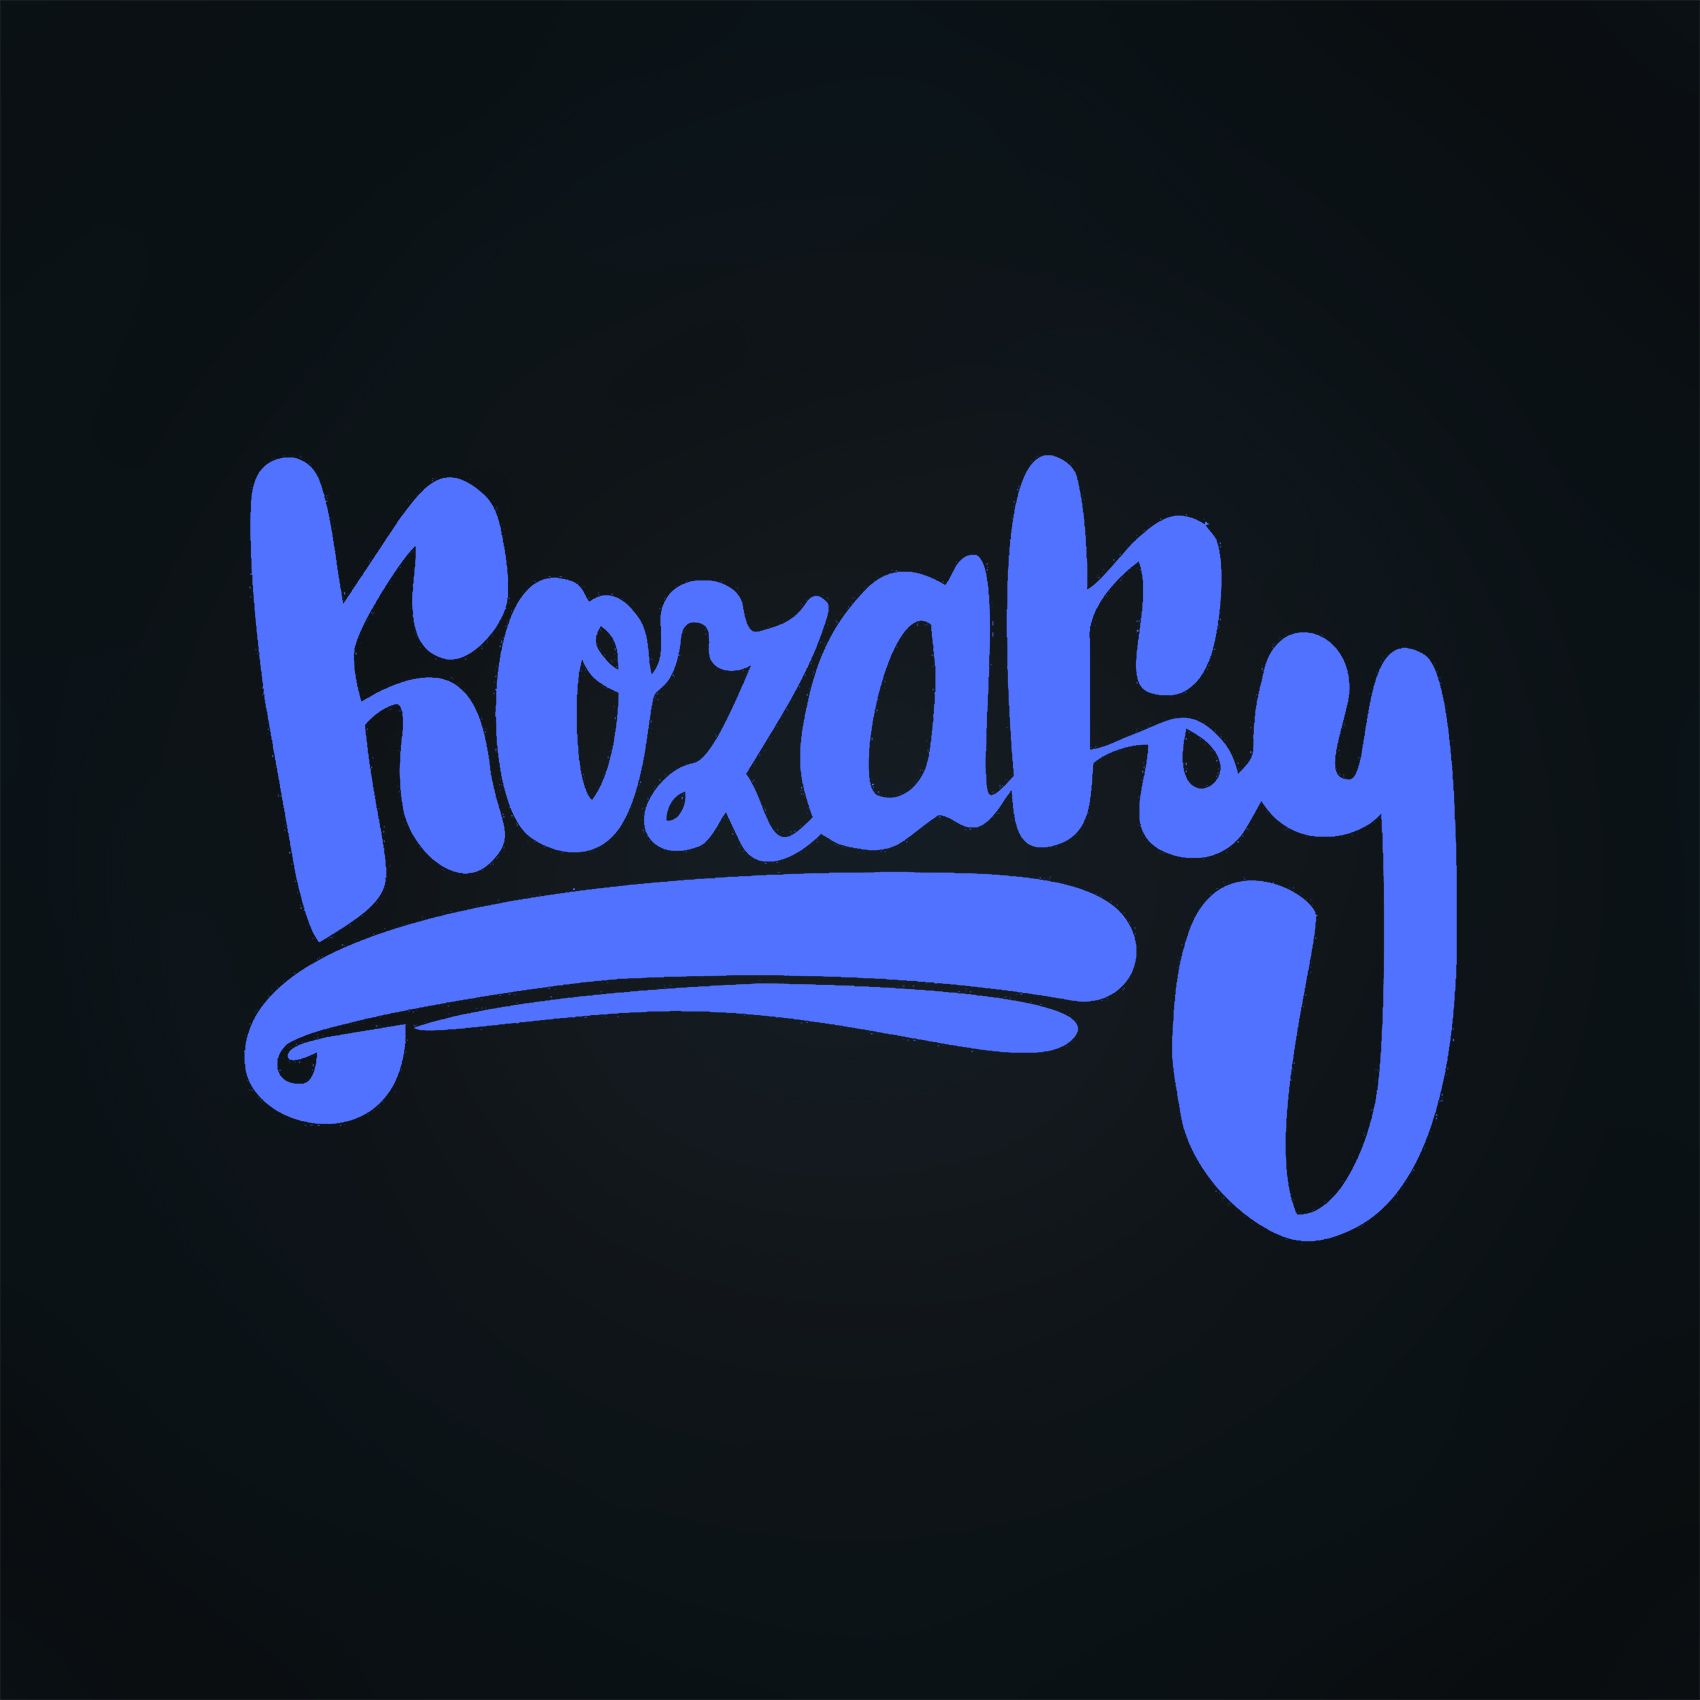 Логотип для КОЗАКИ/КАЗАКИ/KOZAKY - дизайнер ivan091095